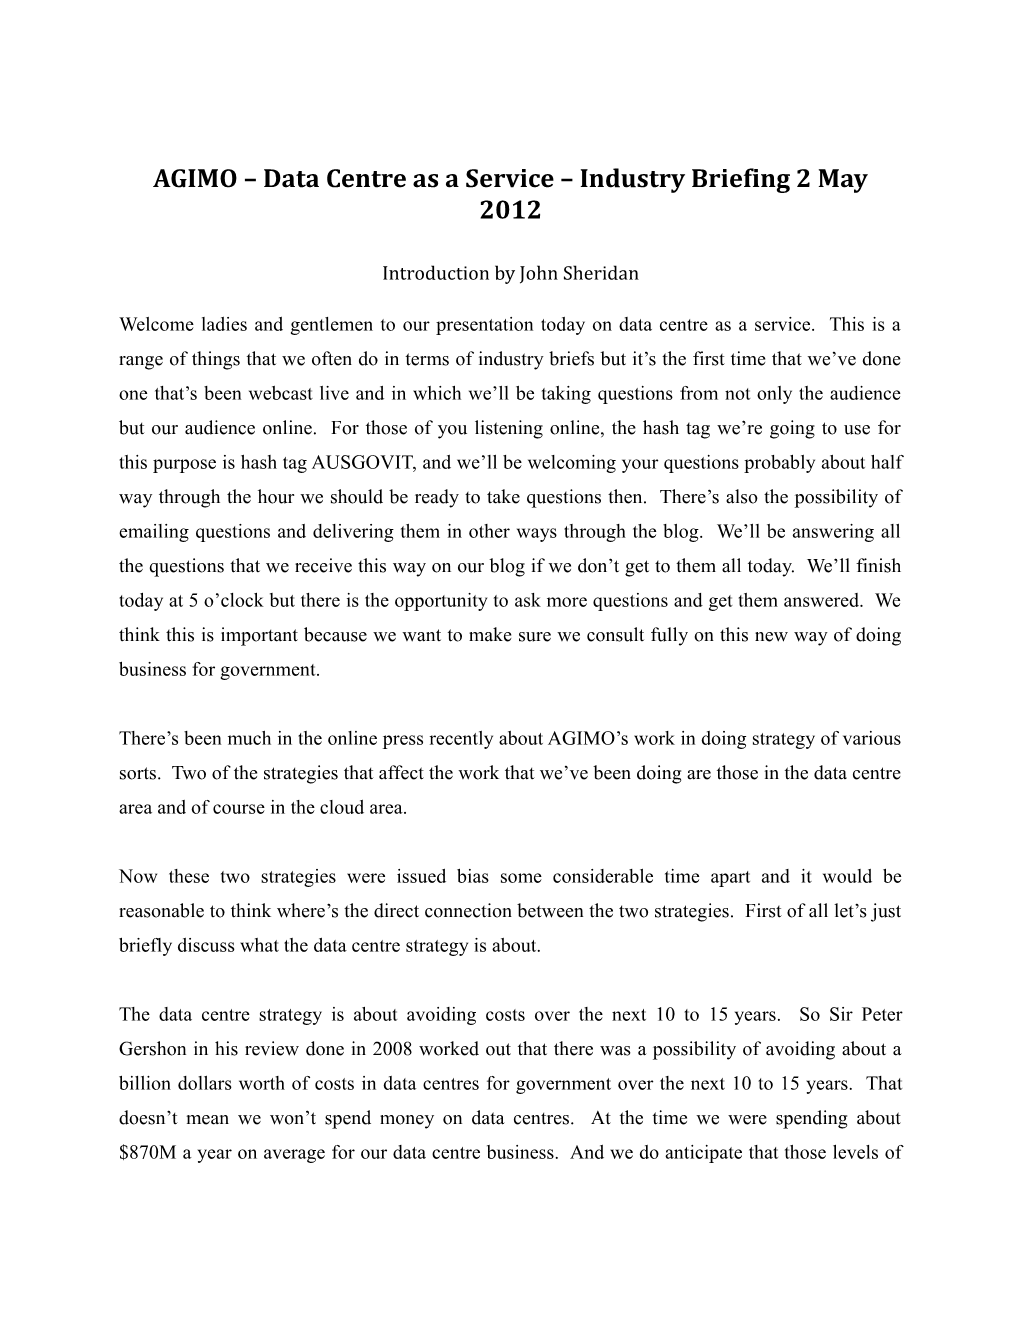 Transcript of Dcaas Industry Brief 2/5/12